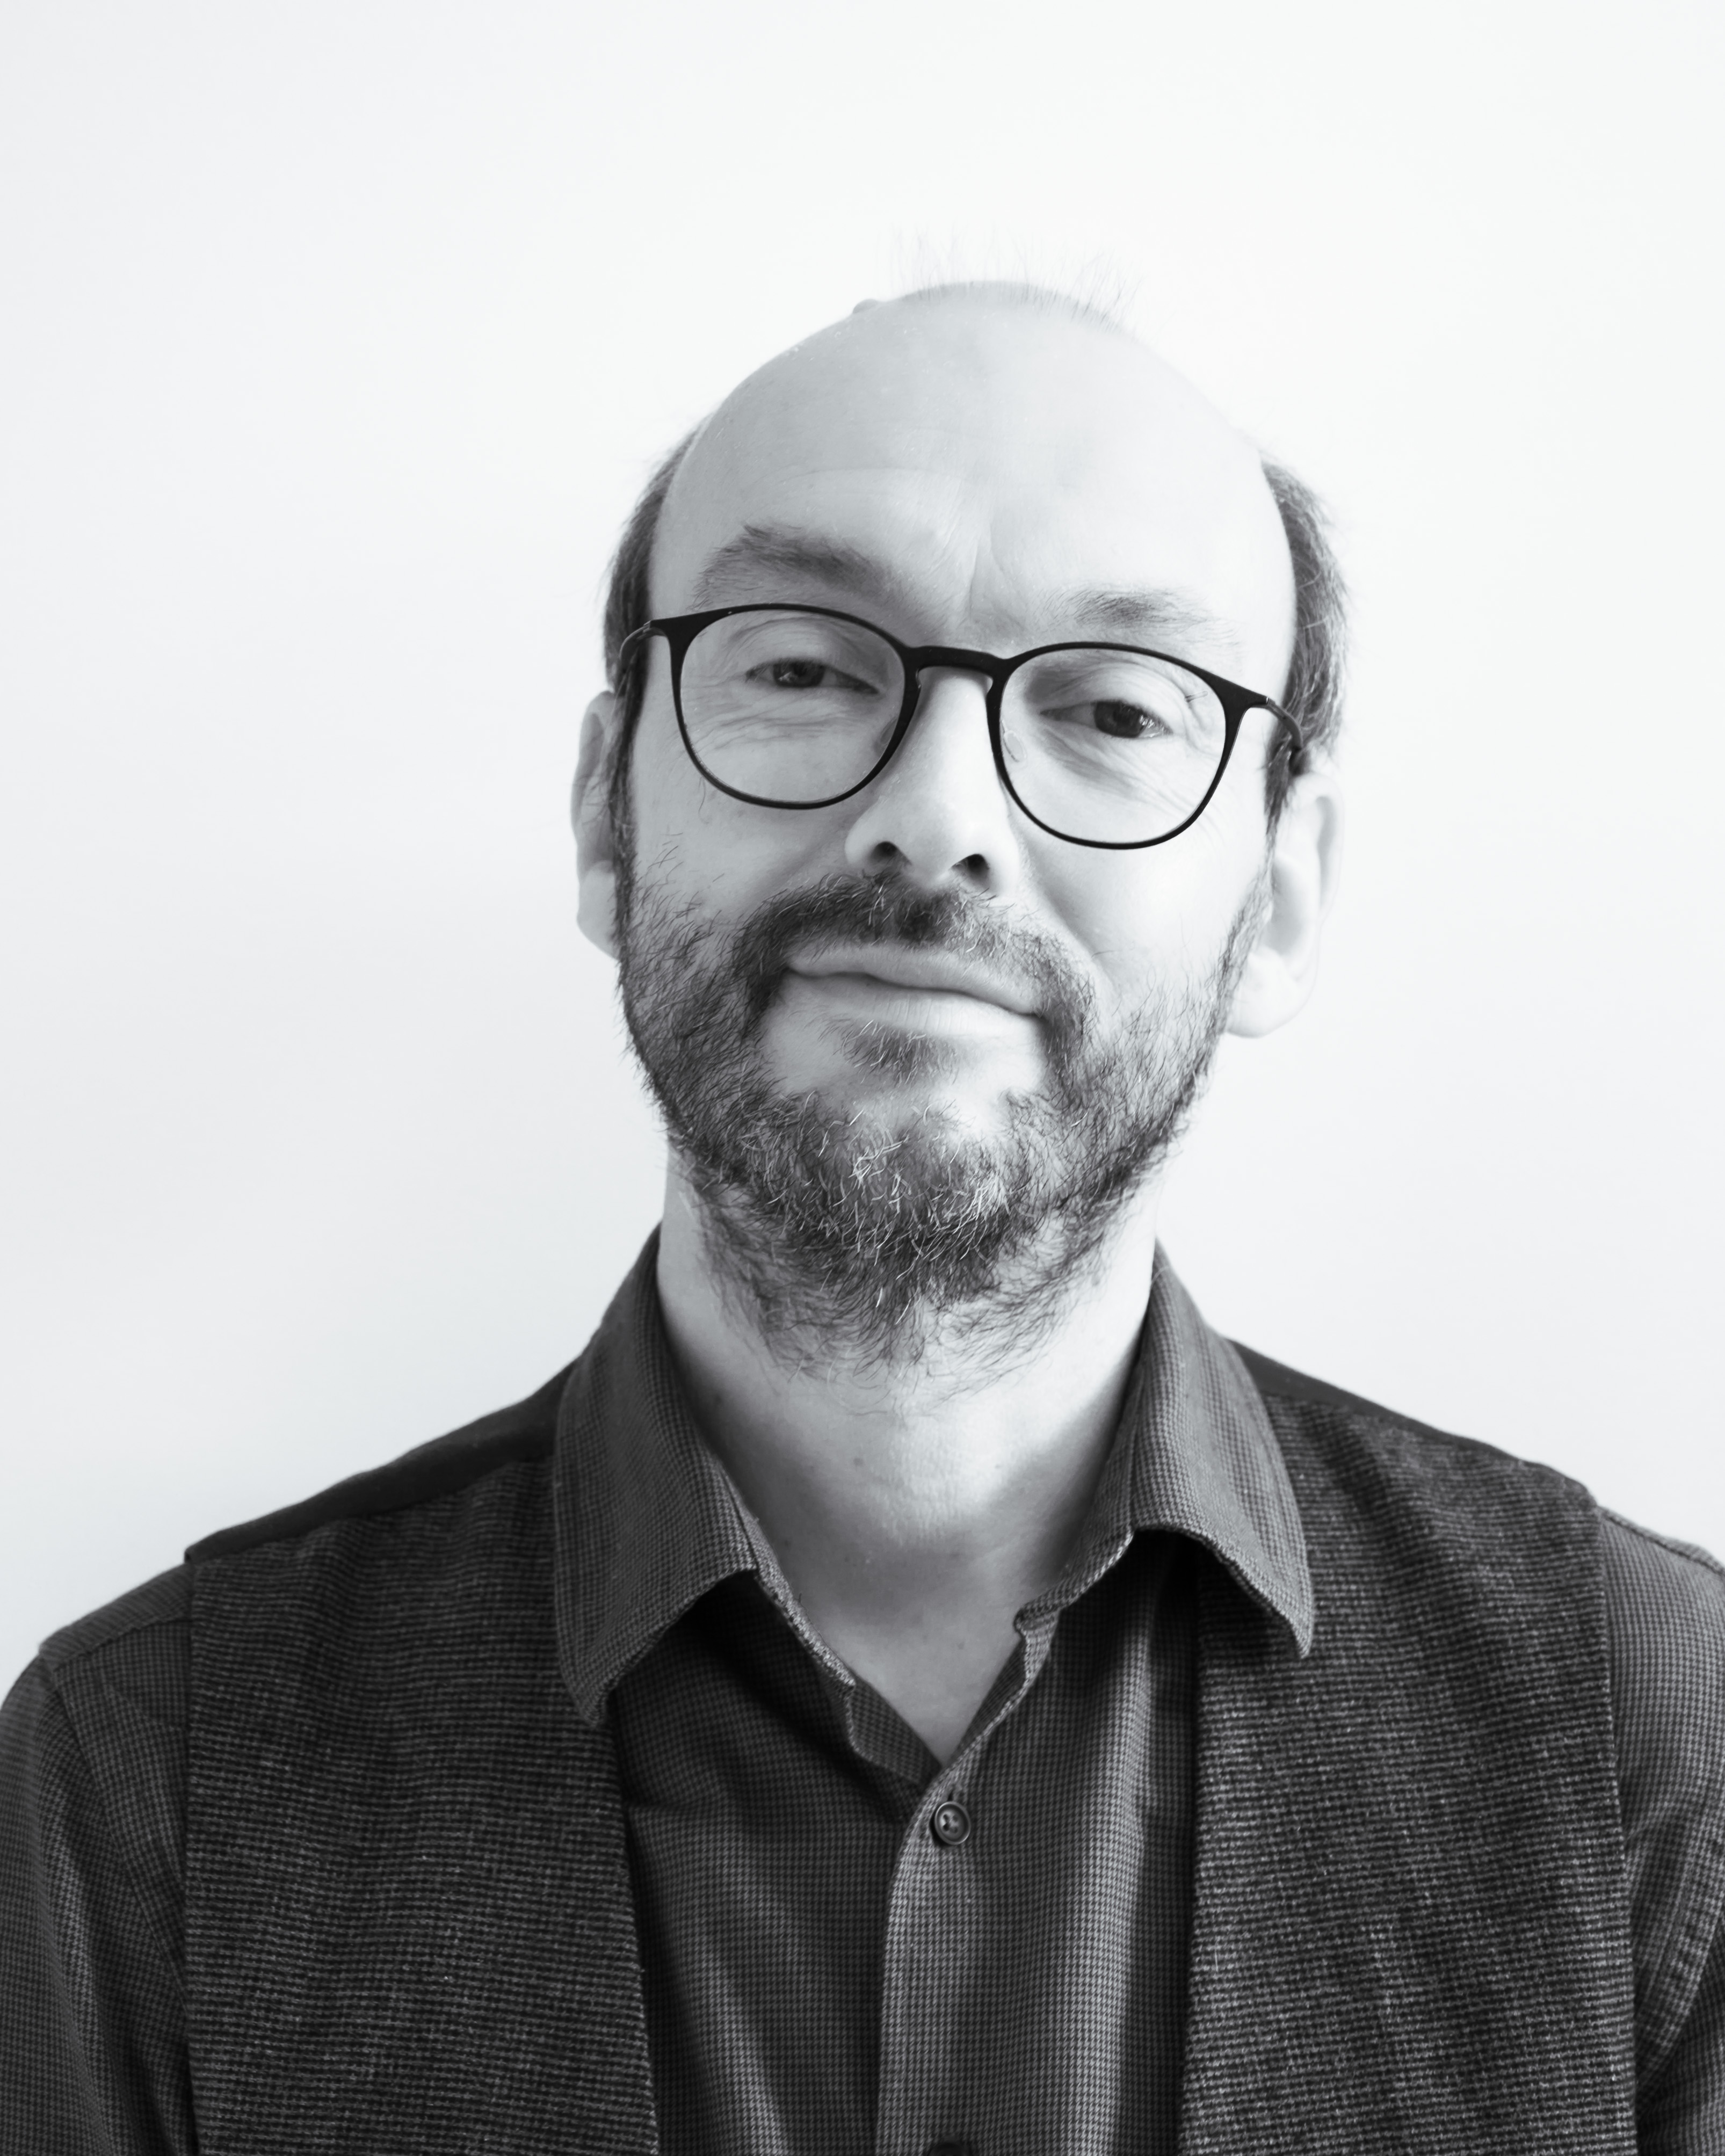 Profielfoto van C-sharp docent Vincent Van De Walle in zwart-wit